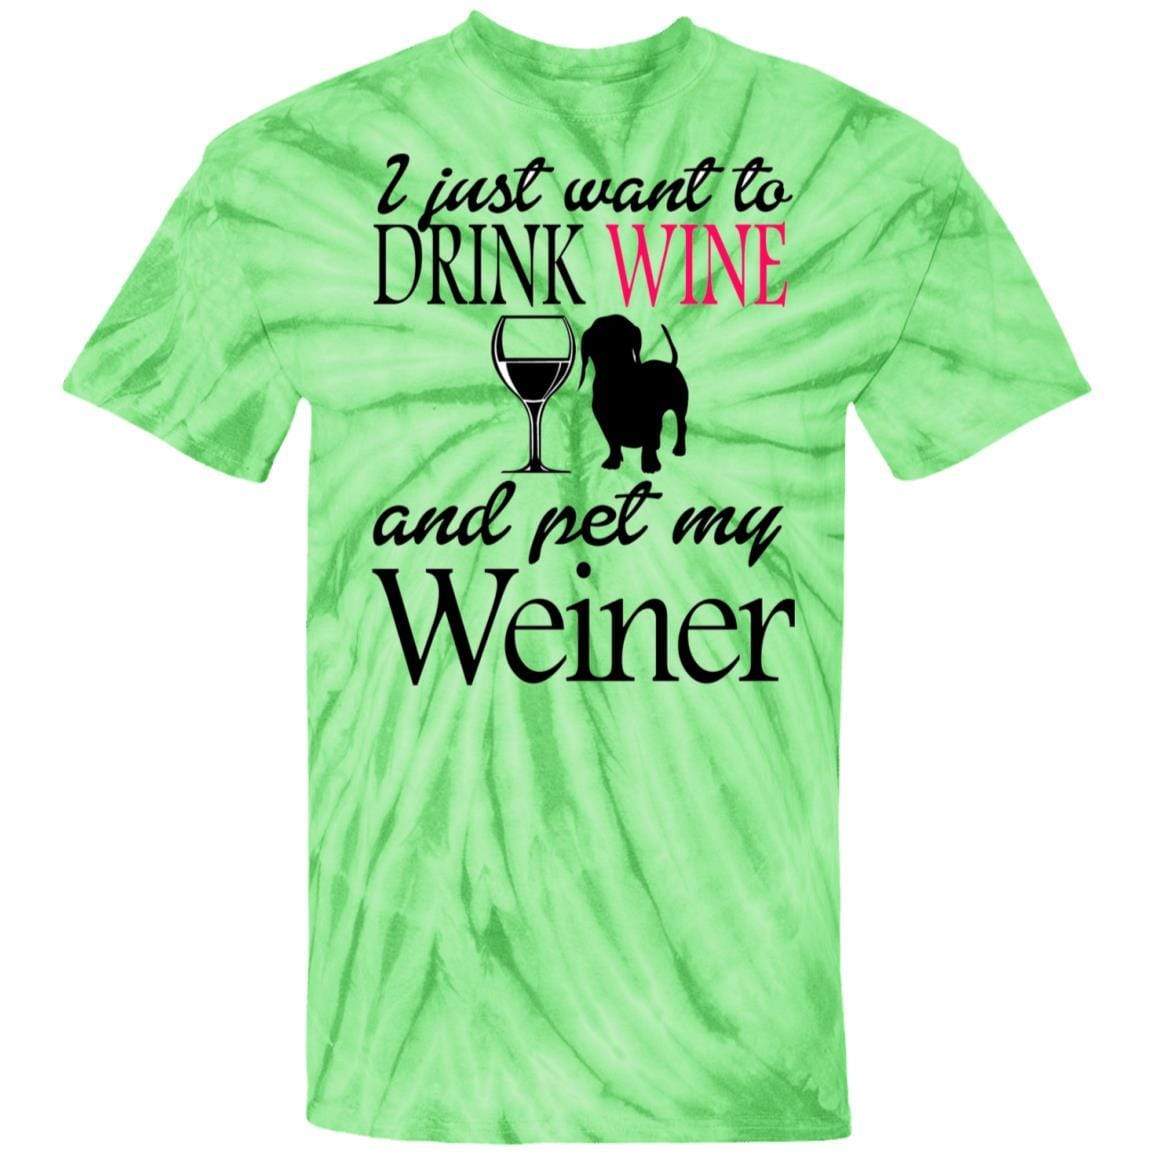 T-Shirts SpiderLime / S WineyBitches.Co "Drink wine, Pet Weiner" 100% Cotton Tie Dye T-Shirt WineyBitchesCo